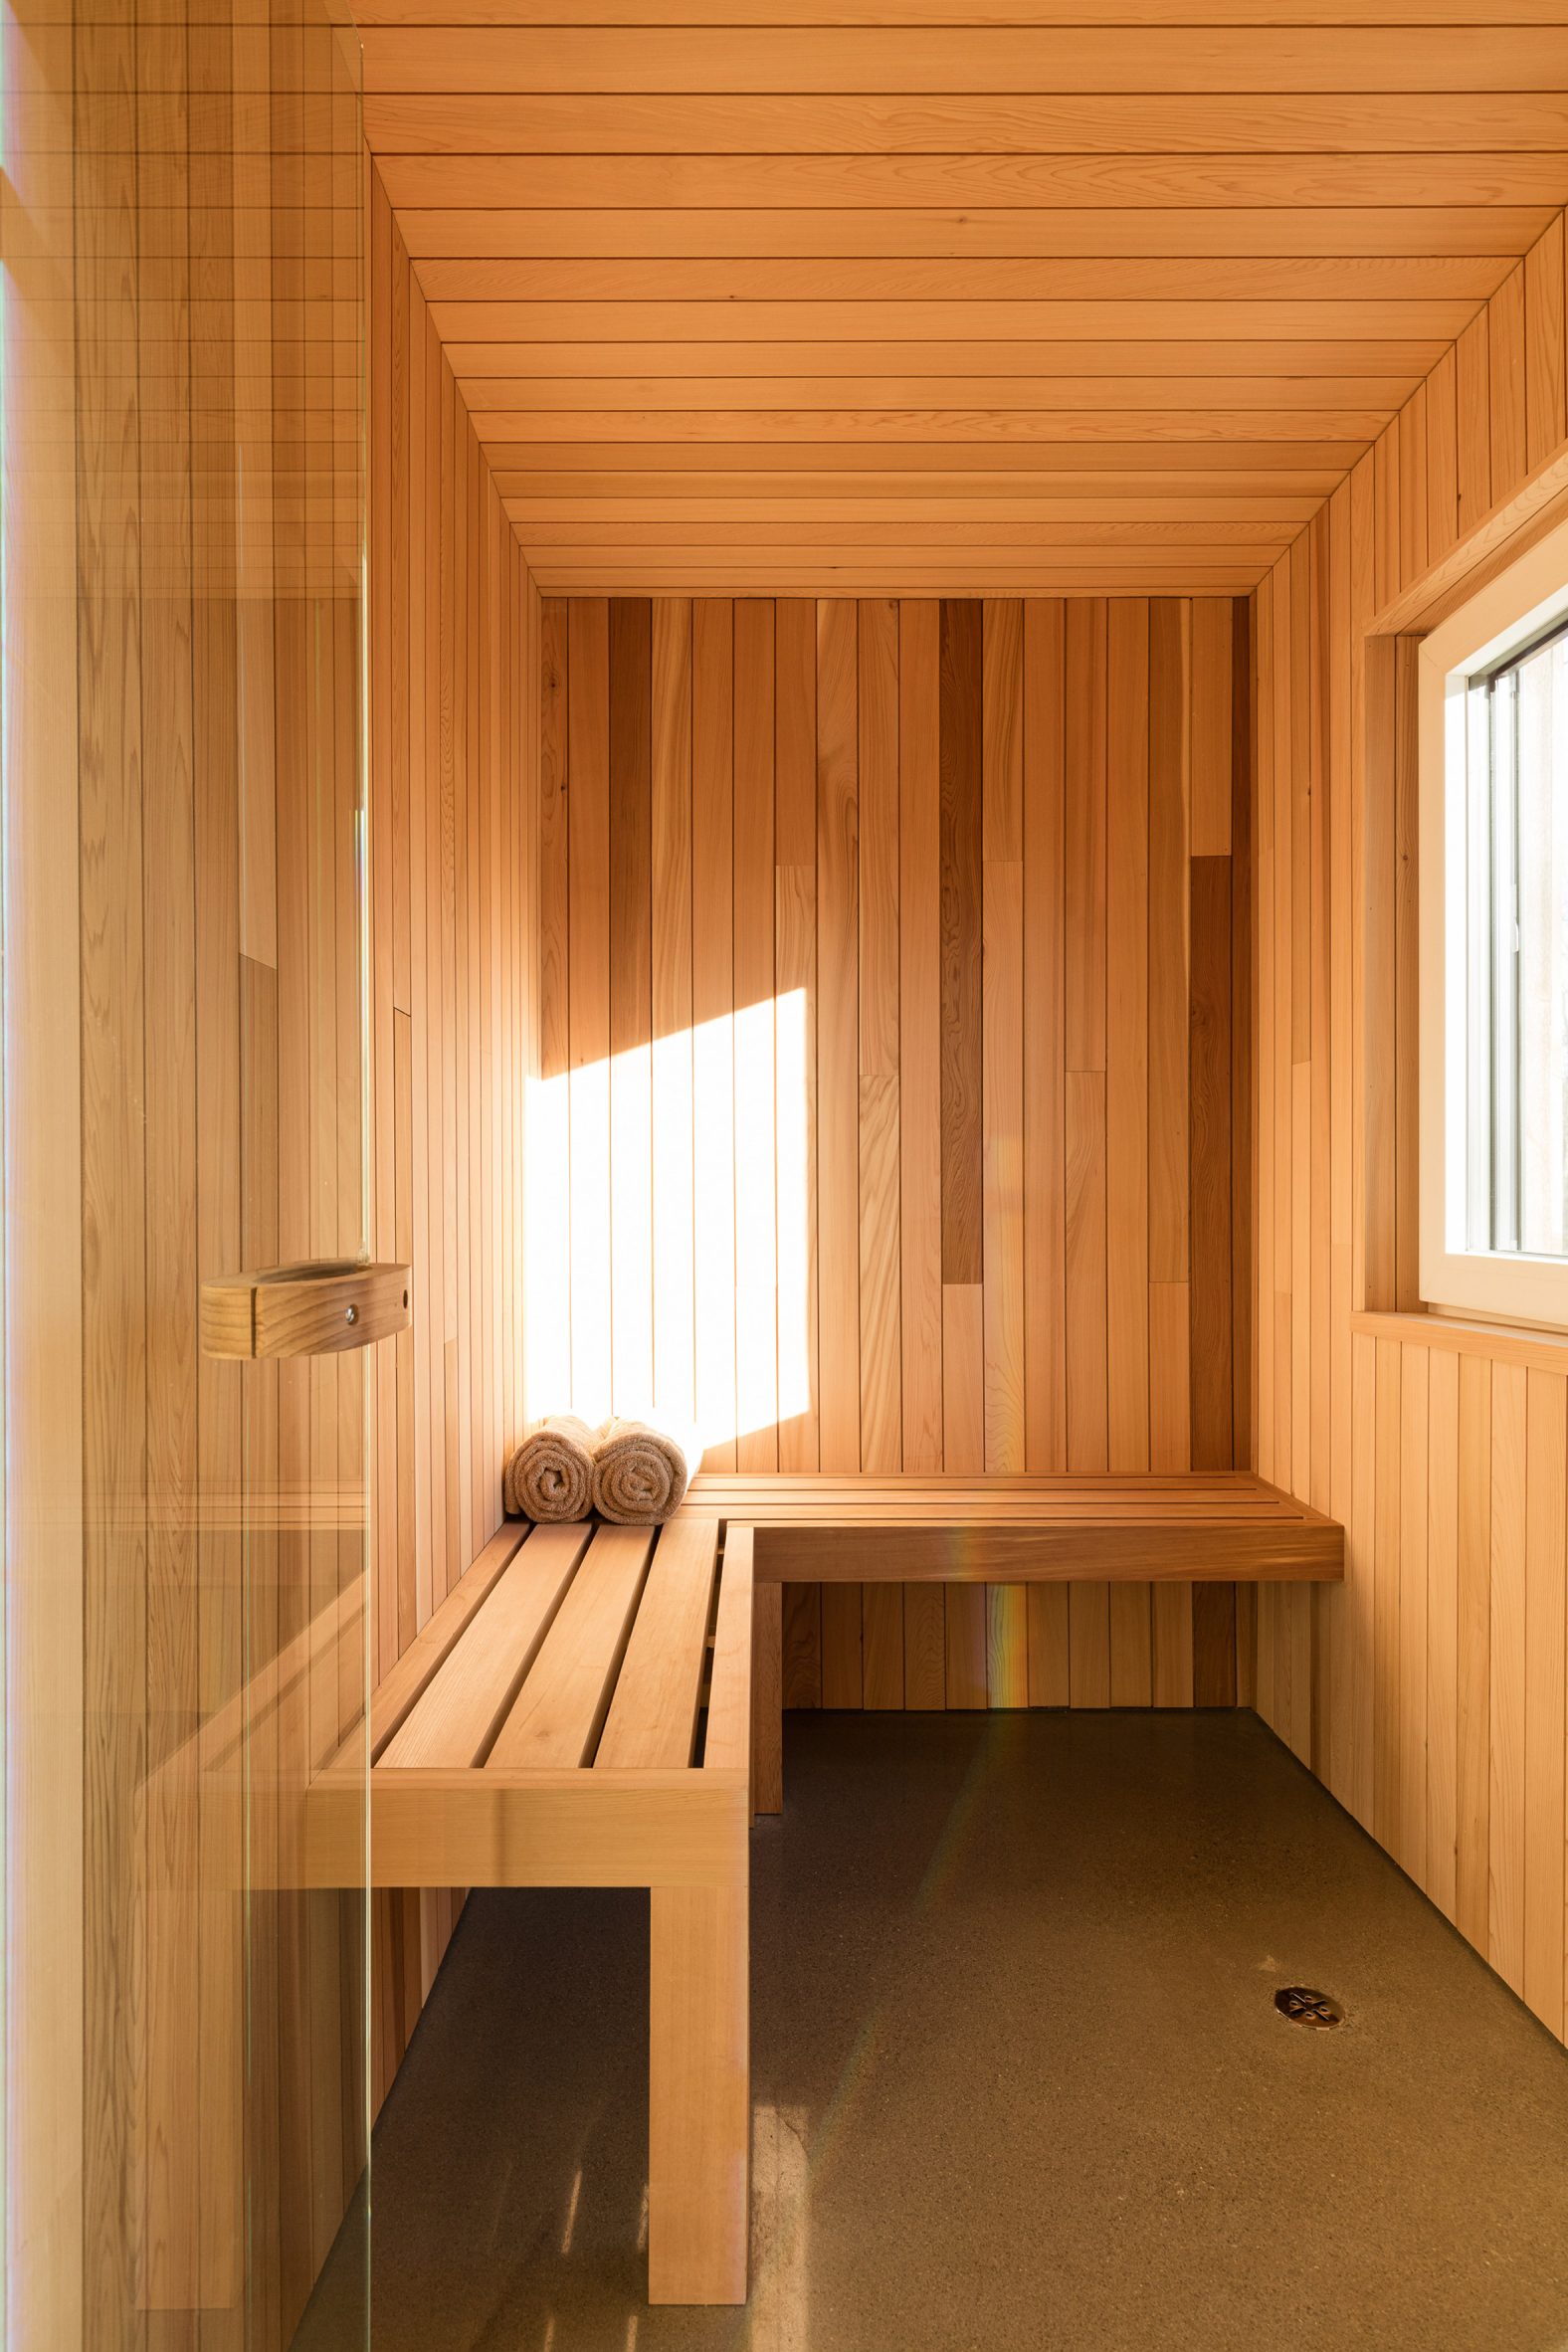 Ngoài ra KTS cũng thiết kế riêng một phòng xông hơi khô bằng gỗ với băng ghế ngồi hình chữ L để các thành viên tận hưởng cảm giác spa tại gia.